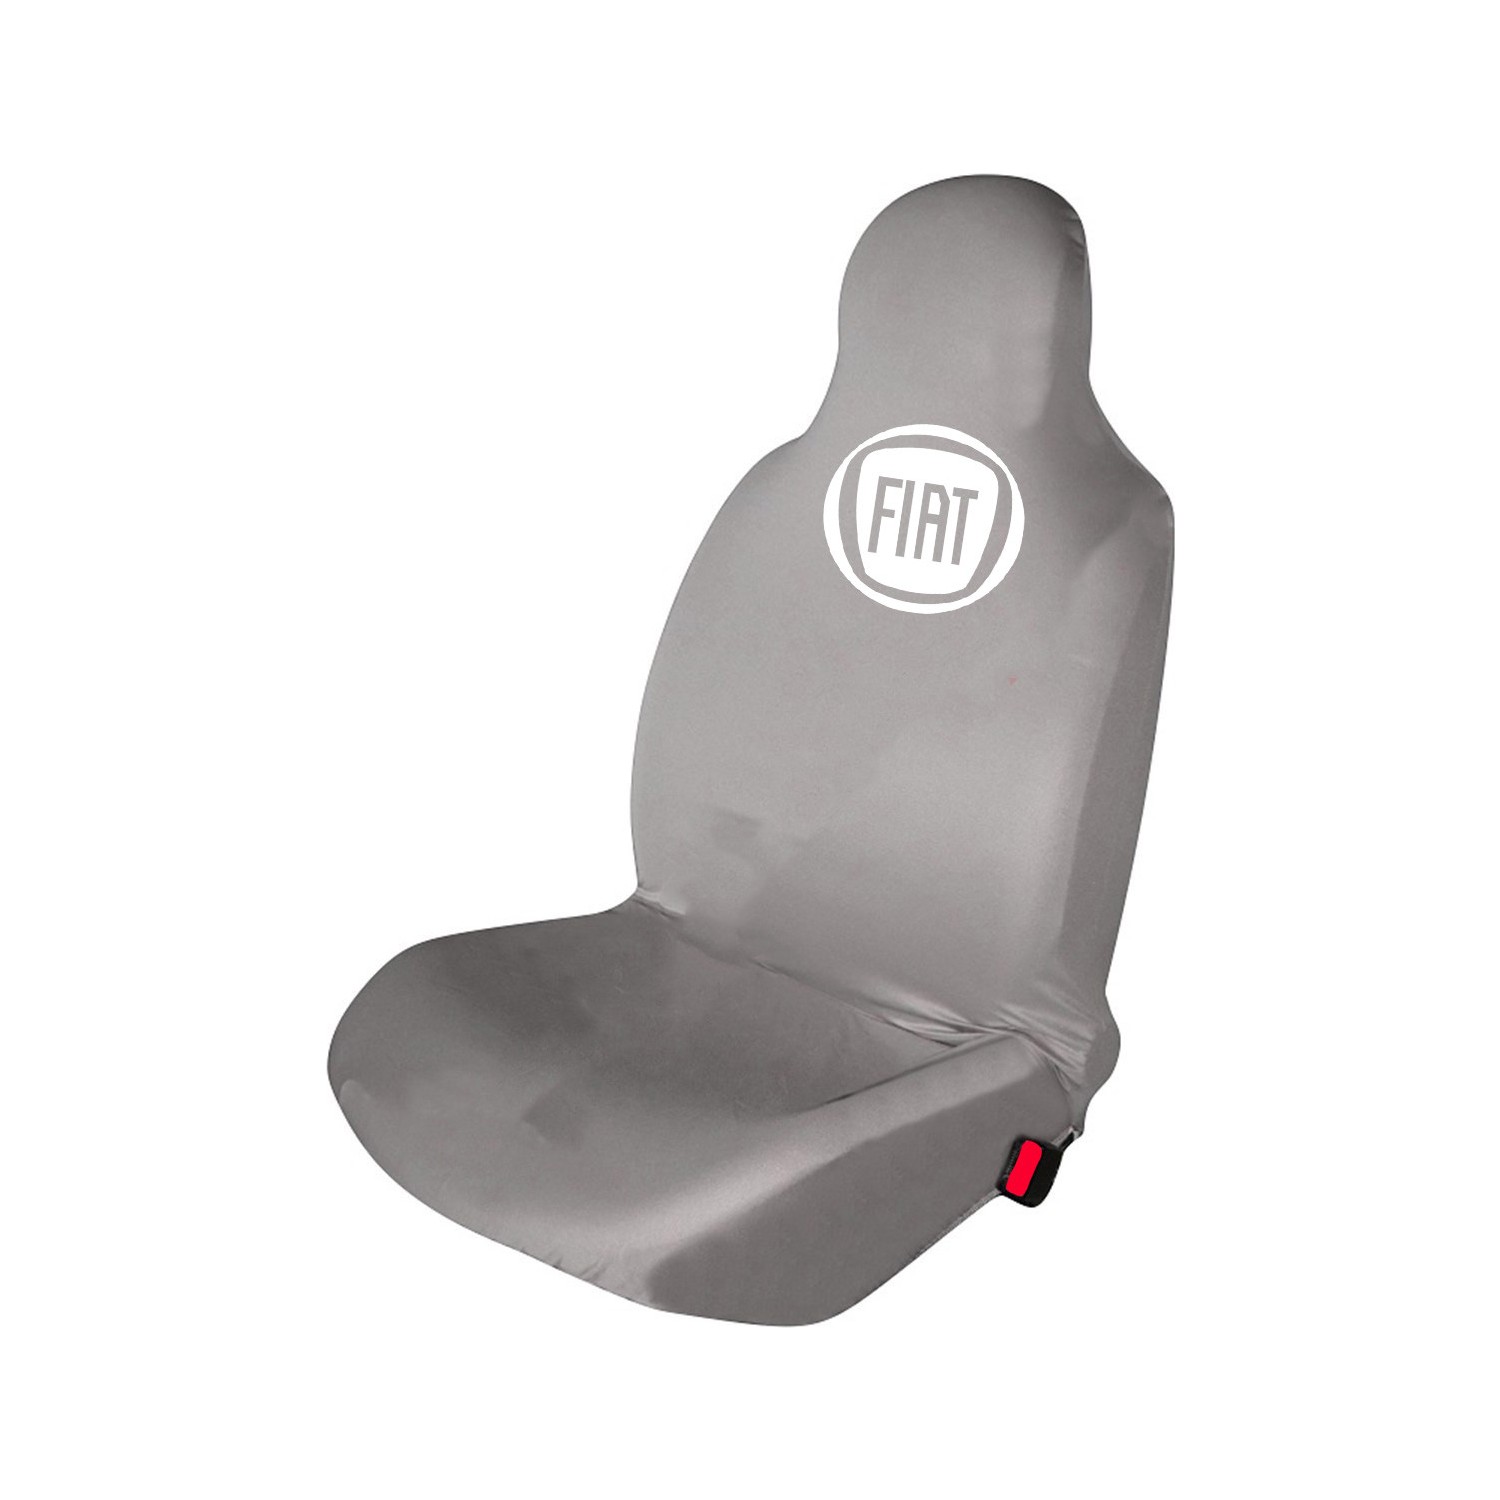 Fiat Linea Koltuk Kılıfı Ön Arka Takım Fiyatı Taksit Seçenekleri